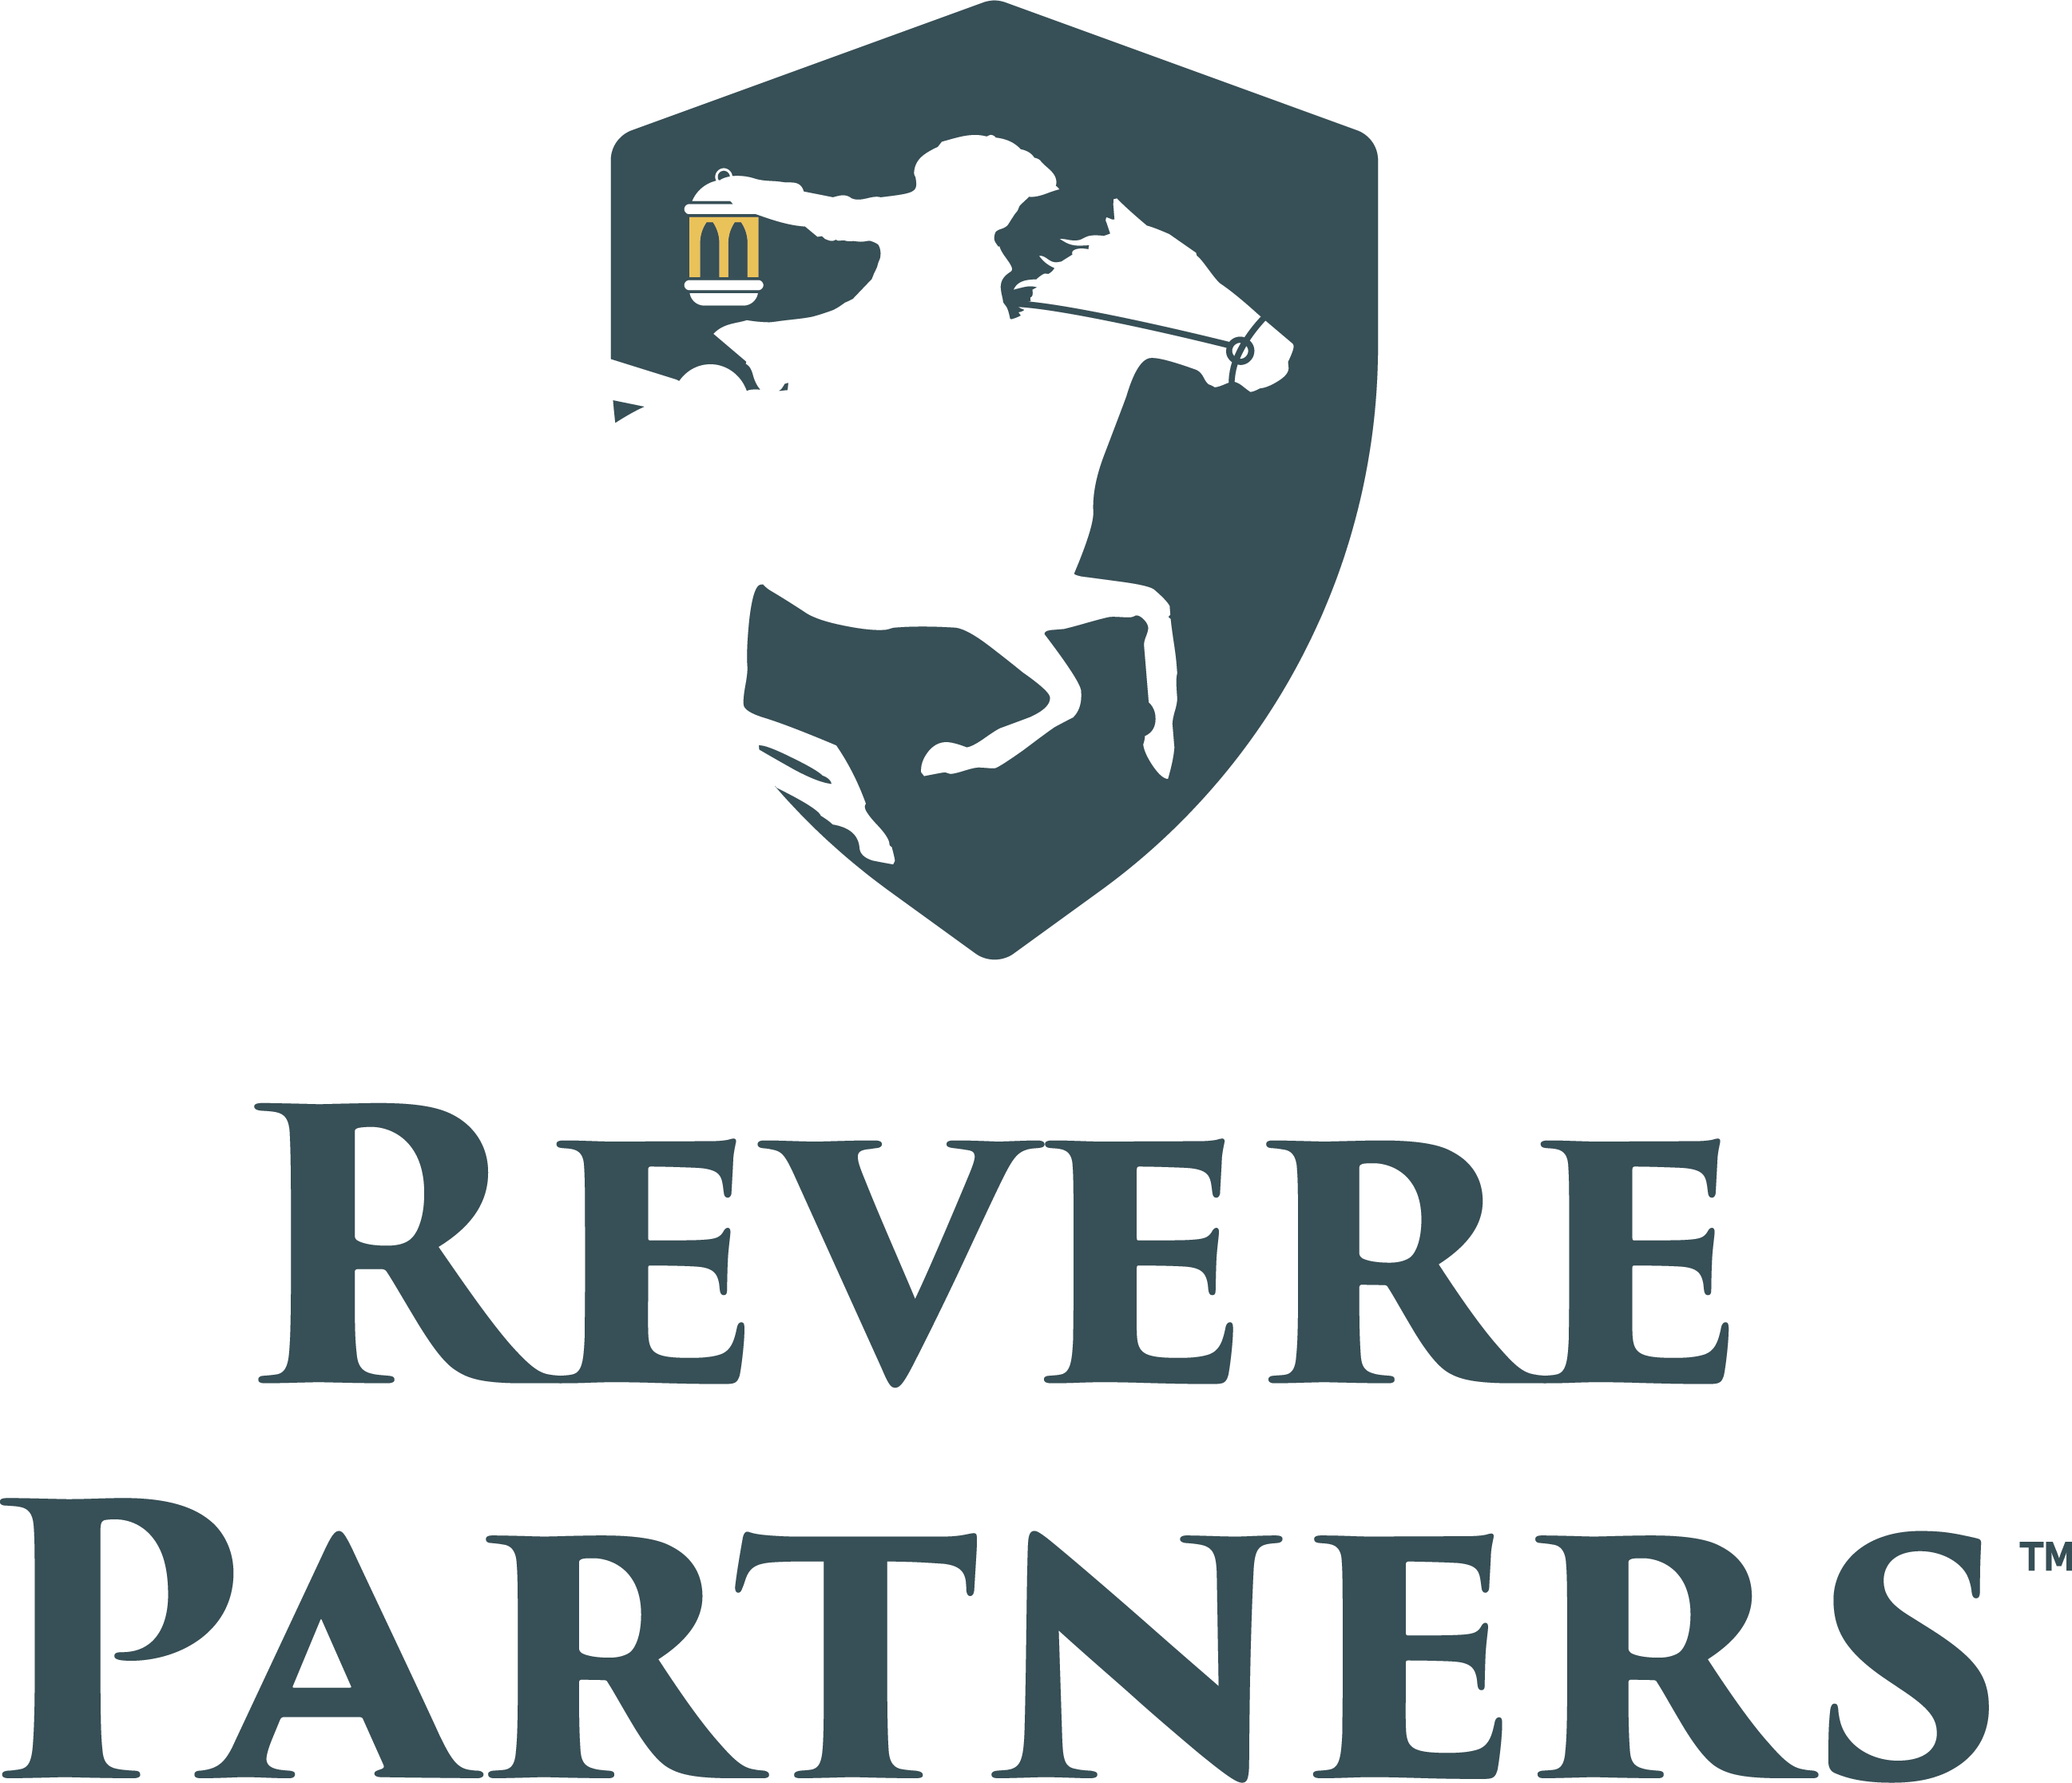 Revere Partners